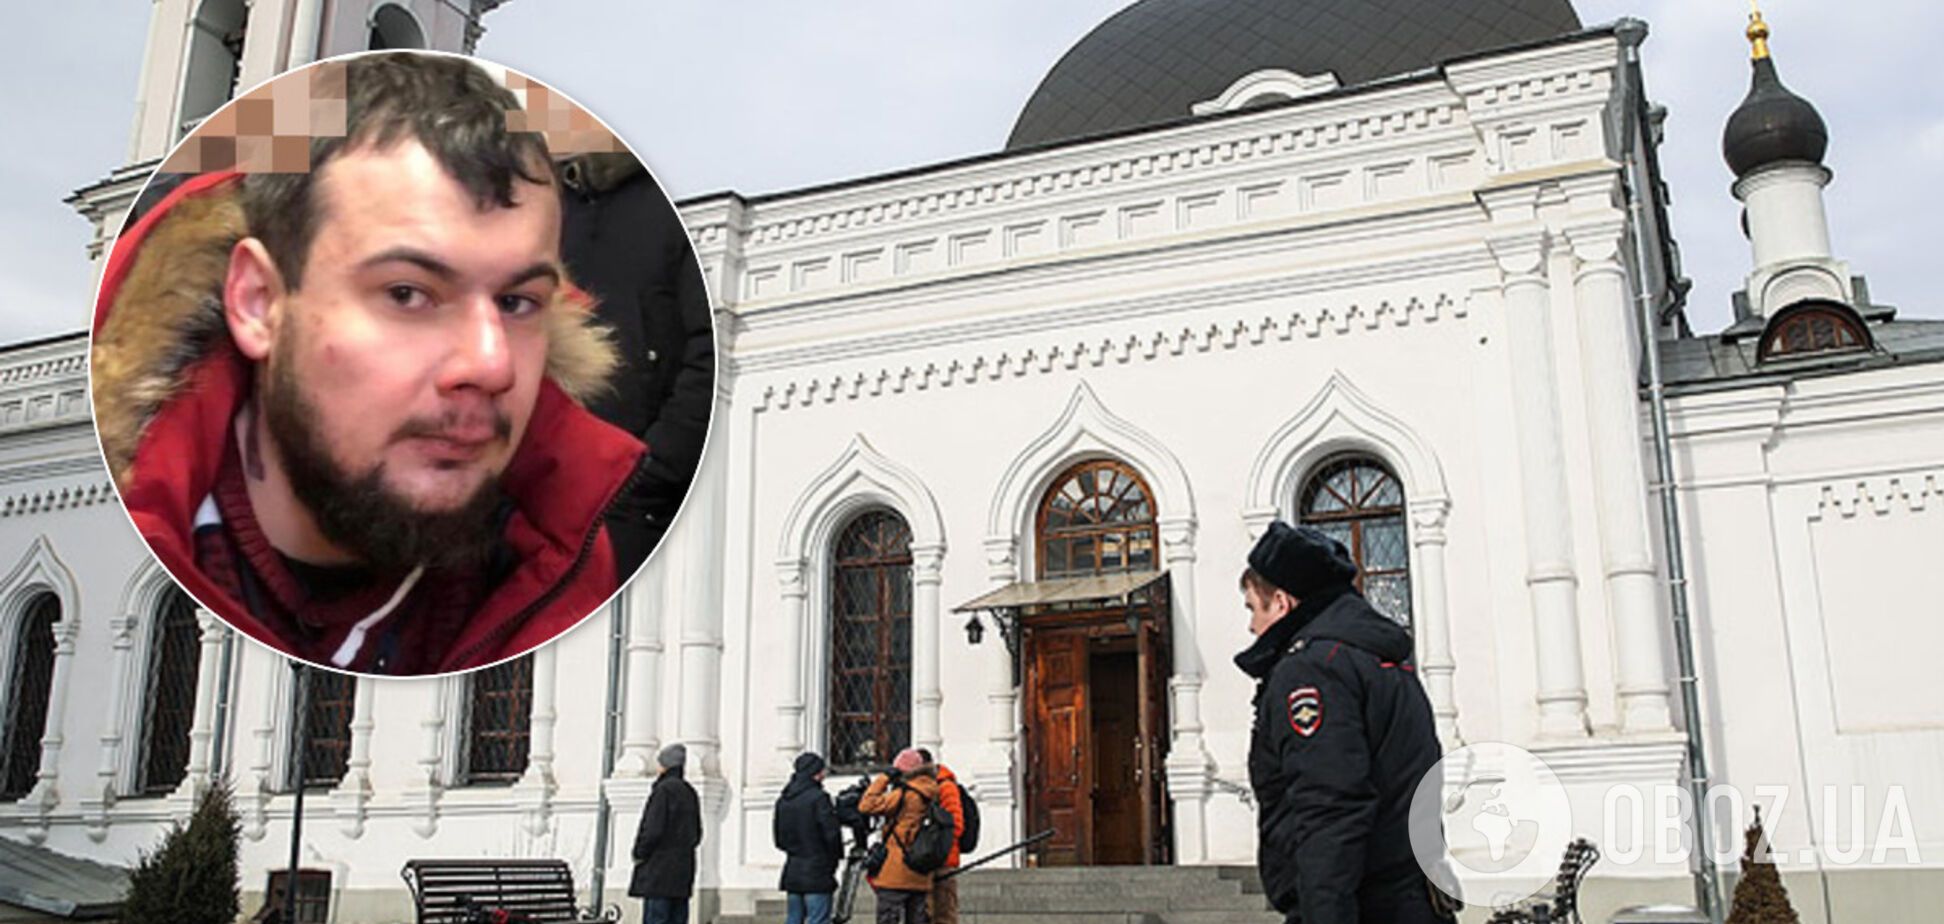 Ефим Ефимов устроил резню в церкви в Москве